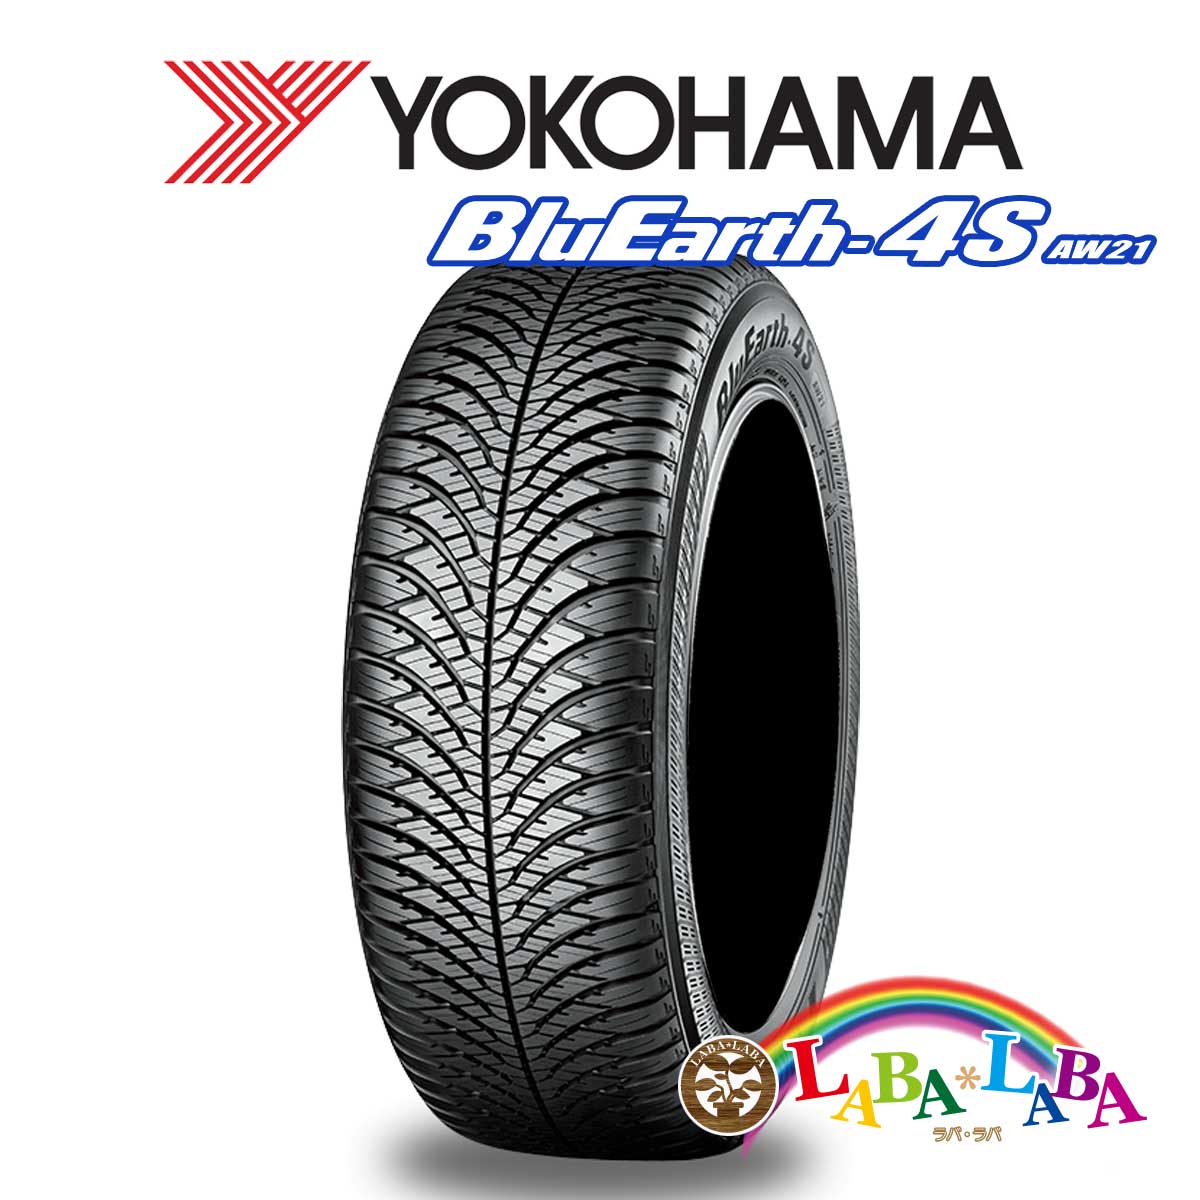 送料無料 国産タイヤ オールシーズン 新品 タイヤのみ 4本SET YOKOHAMA ヨコハマ 106V ブルーアース 225 4本セット 65R17 美品 BluEarth-4S XL AW21 信託